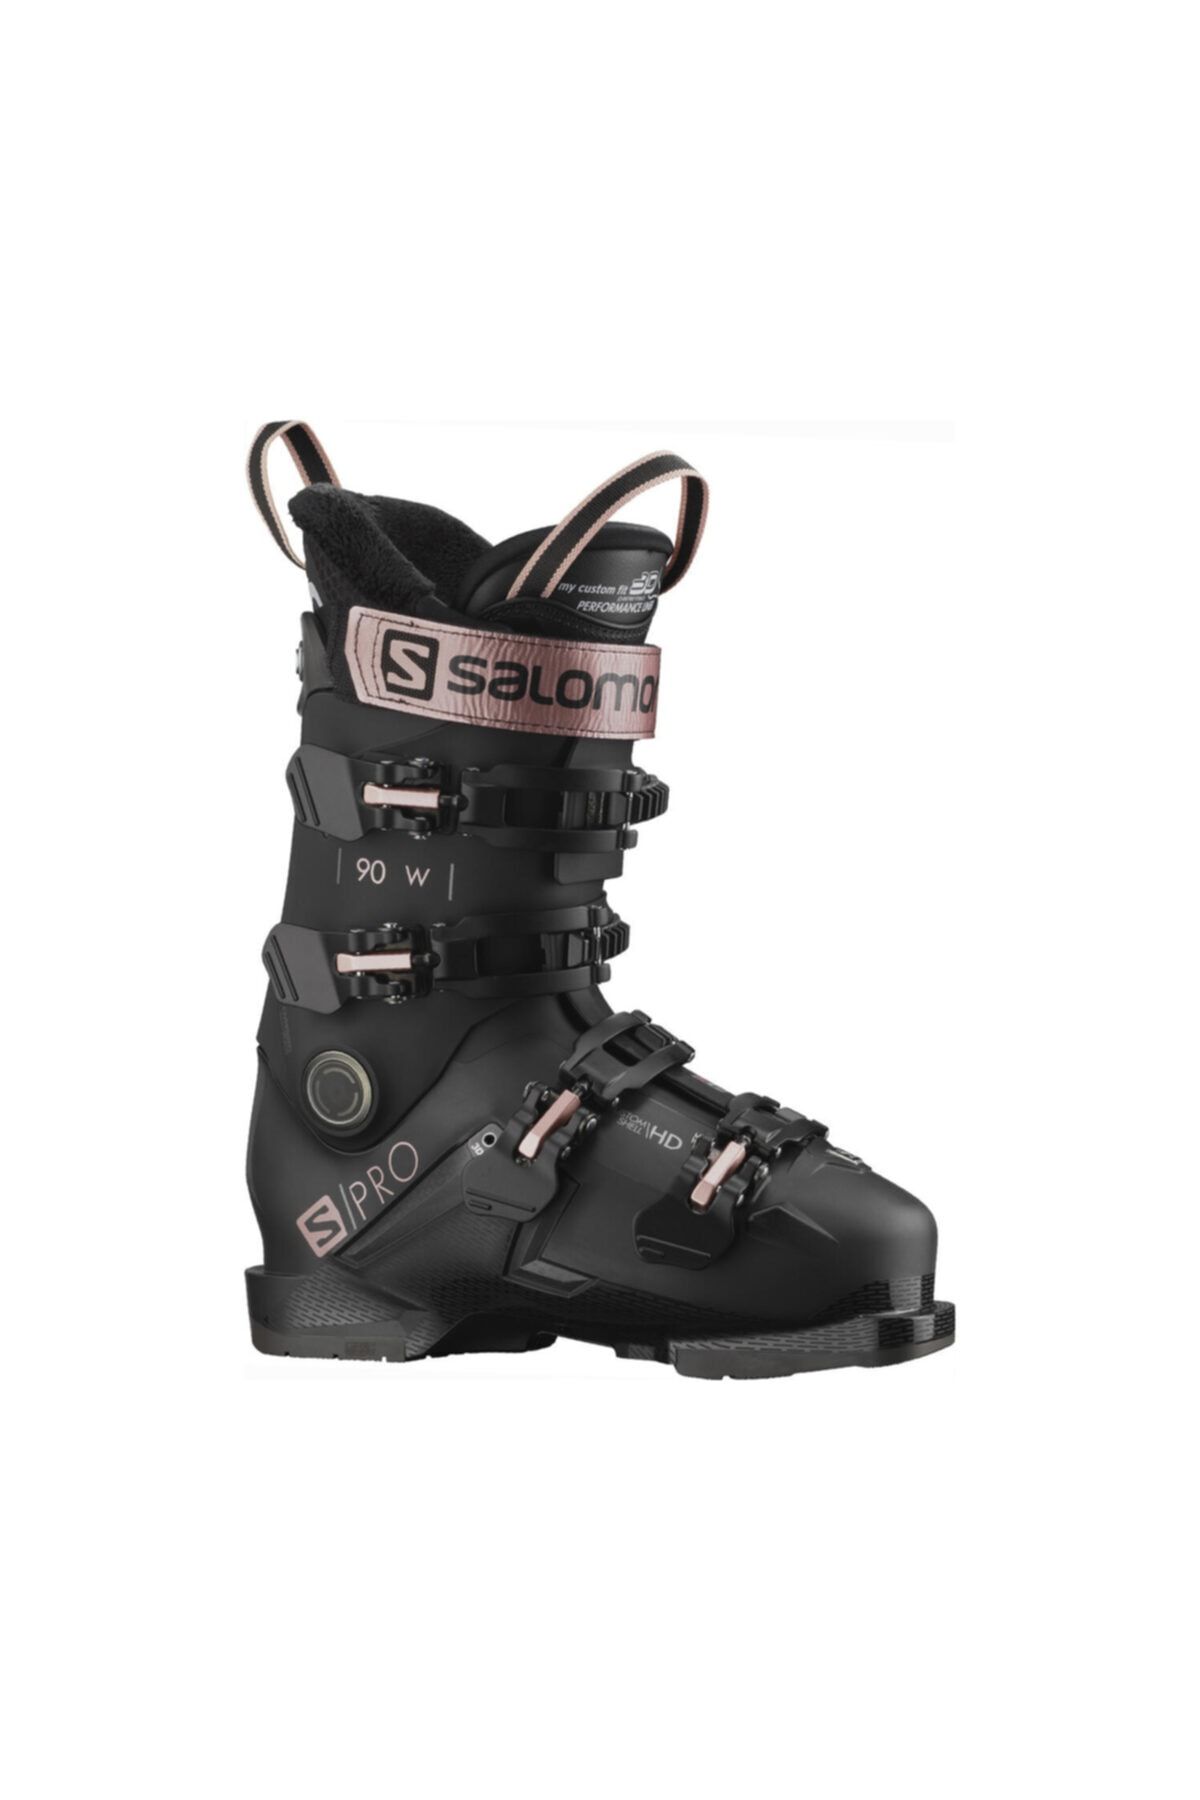 Salomon S/pro 90 Gw Kadın Kayak Ayakkabısı-l41486200